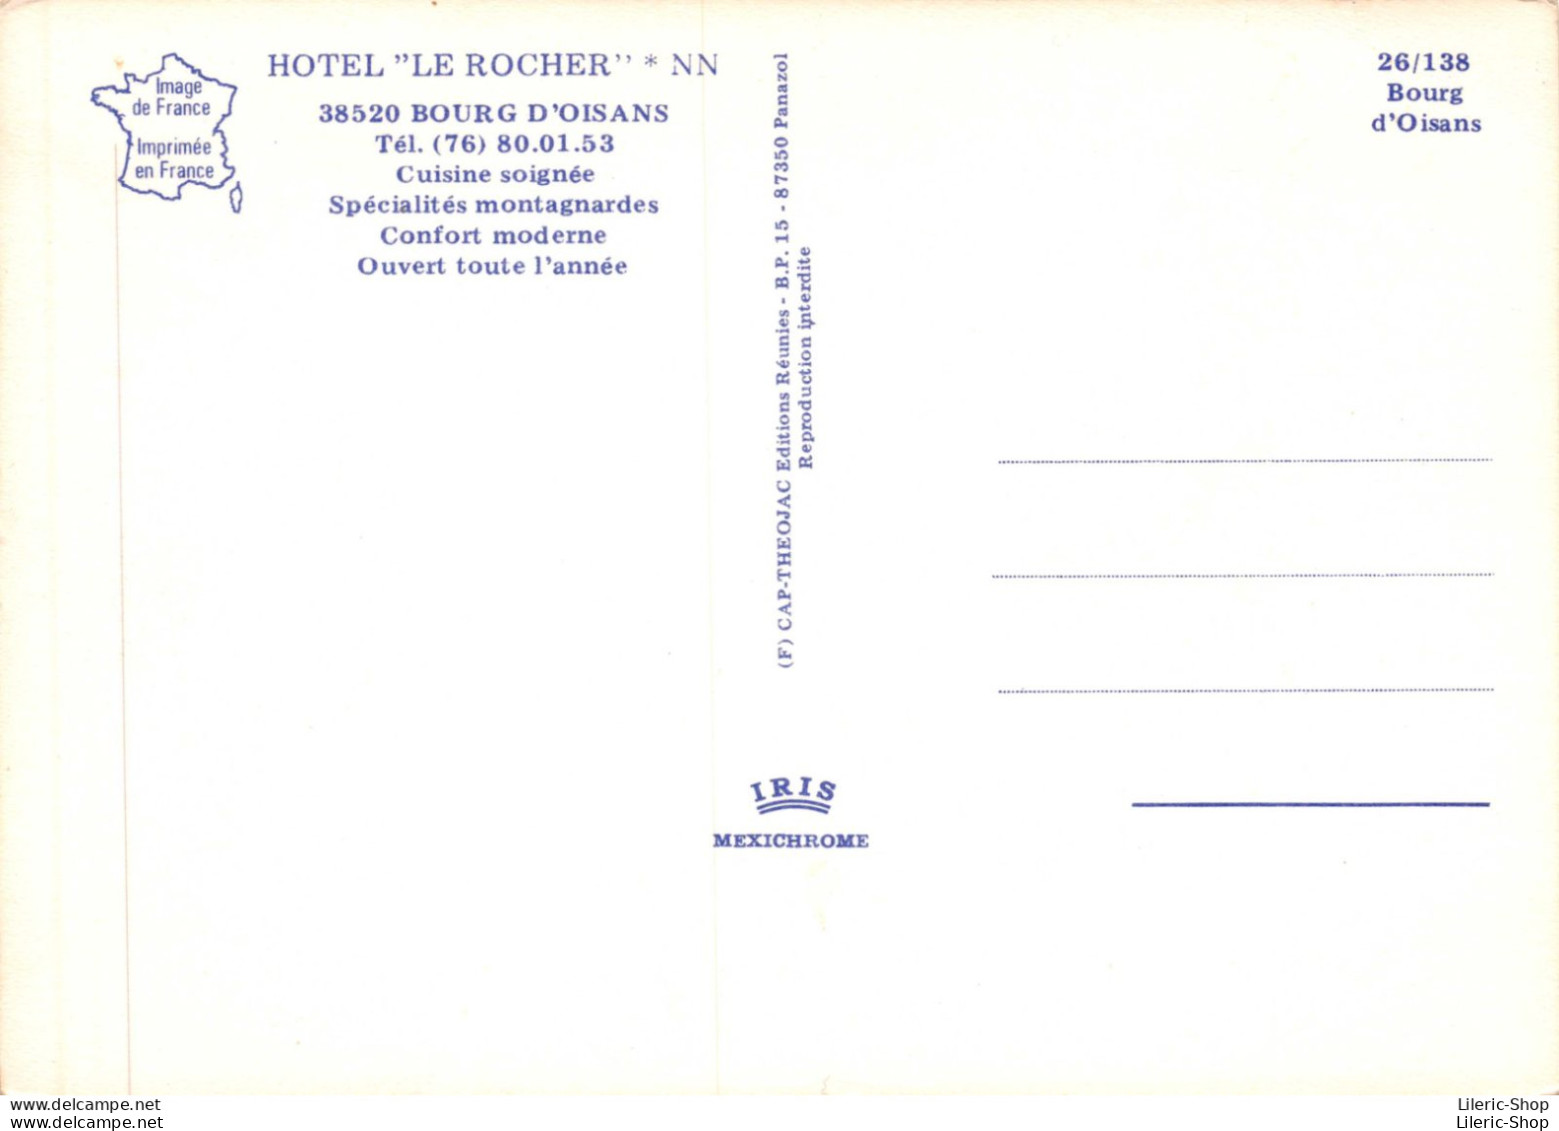 HOTEL "LE ROCHER" * NN 38520 BOURG D'OISANS # Automobiles Peugeot 404, FIAT 850 - Bourg-d'Oisans